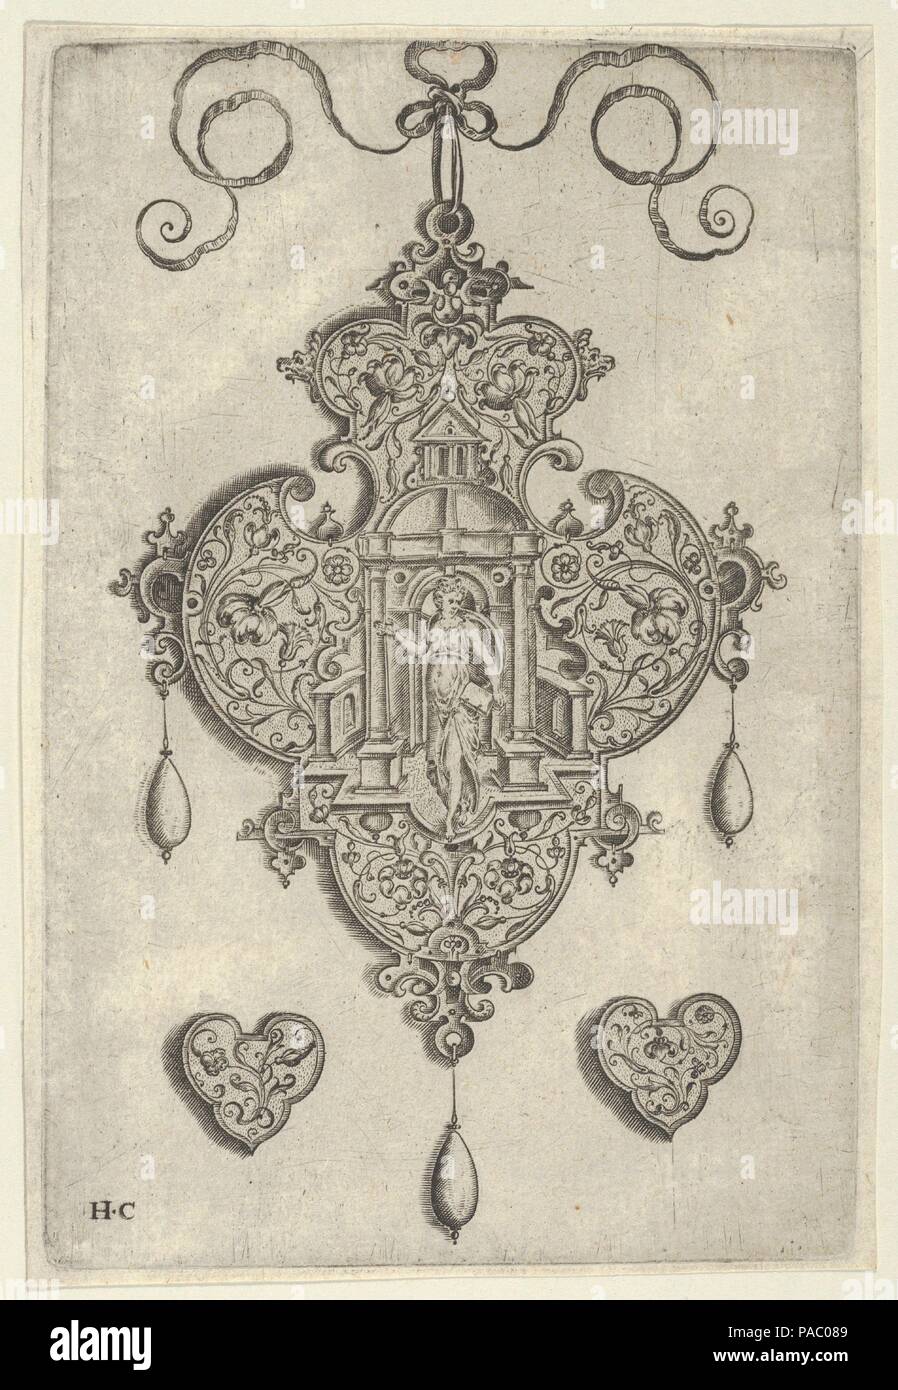 Diseño colgante con fe de pie en un templo circular. Artista: Jan Collaert, Amberes Netherlandish I (ca. Amberes, 1530-1581). Dimensiones: Hoja: 5 × 4 13/16 1/16 in. (14,8 × cm). Editorial: